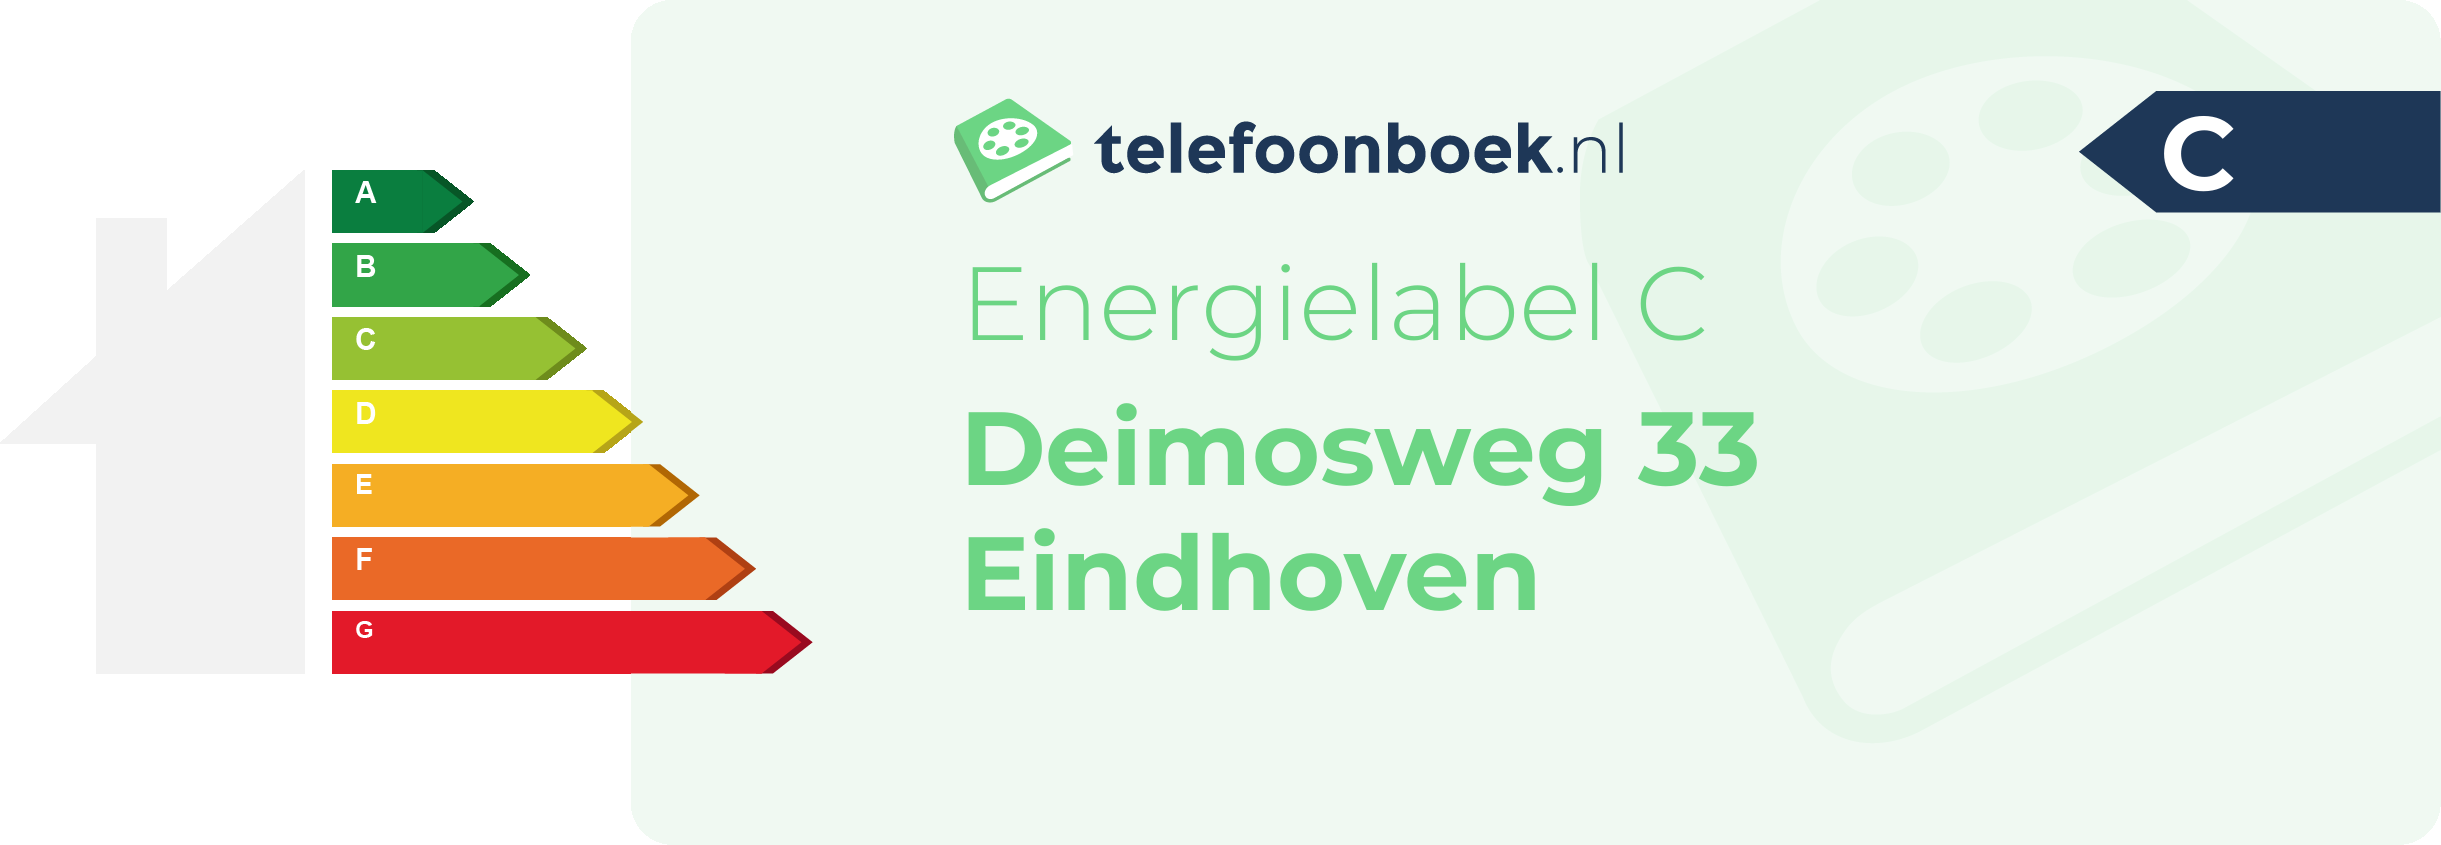 Energielabel Deimosweg 33 Eindhoven